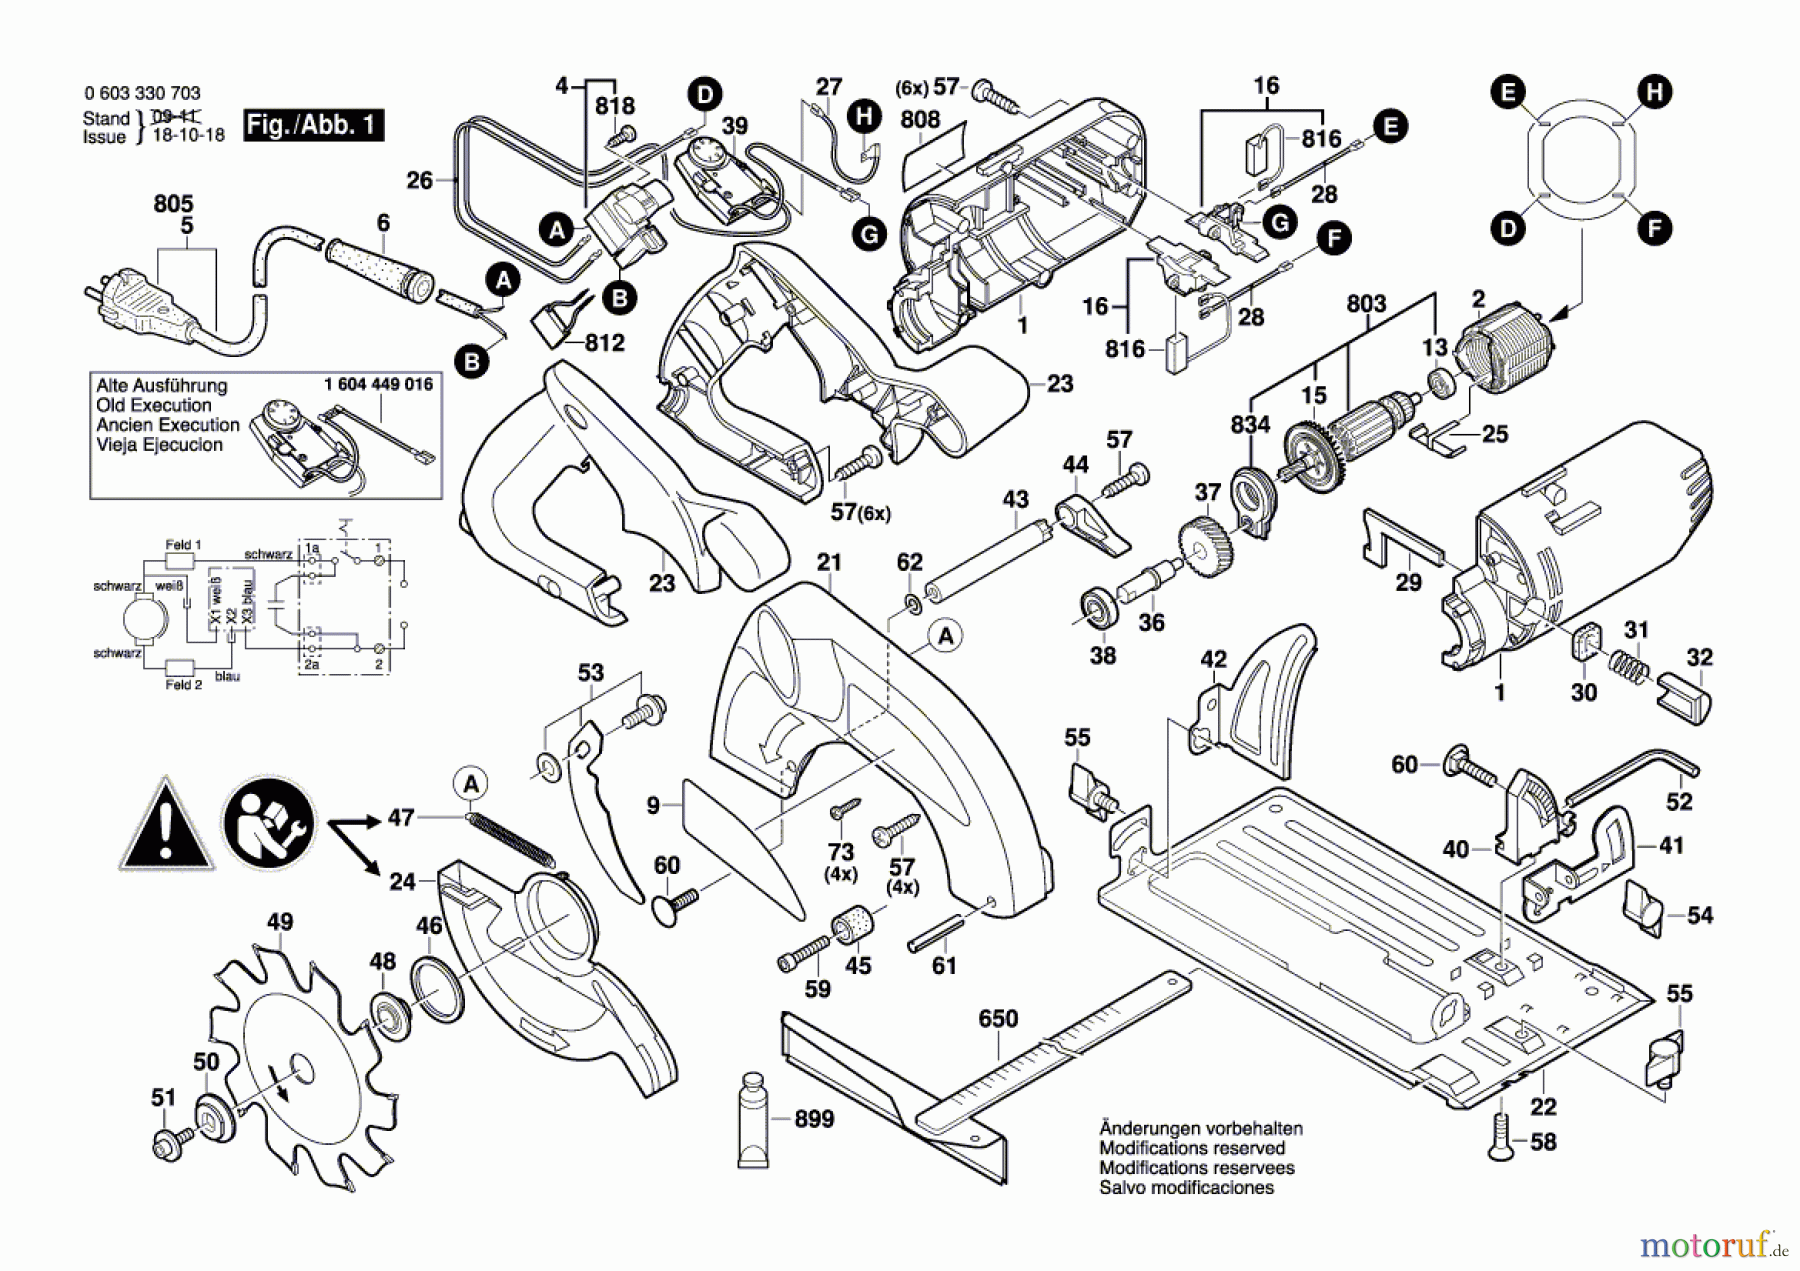  Bosch Werkzeug Handkreissäge PKS 54 CE Seite 1